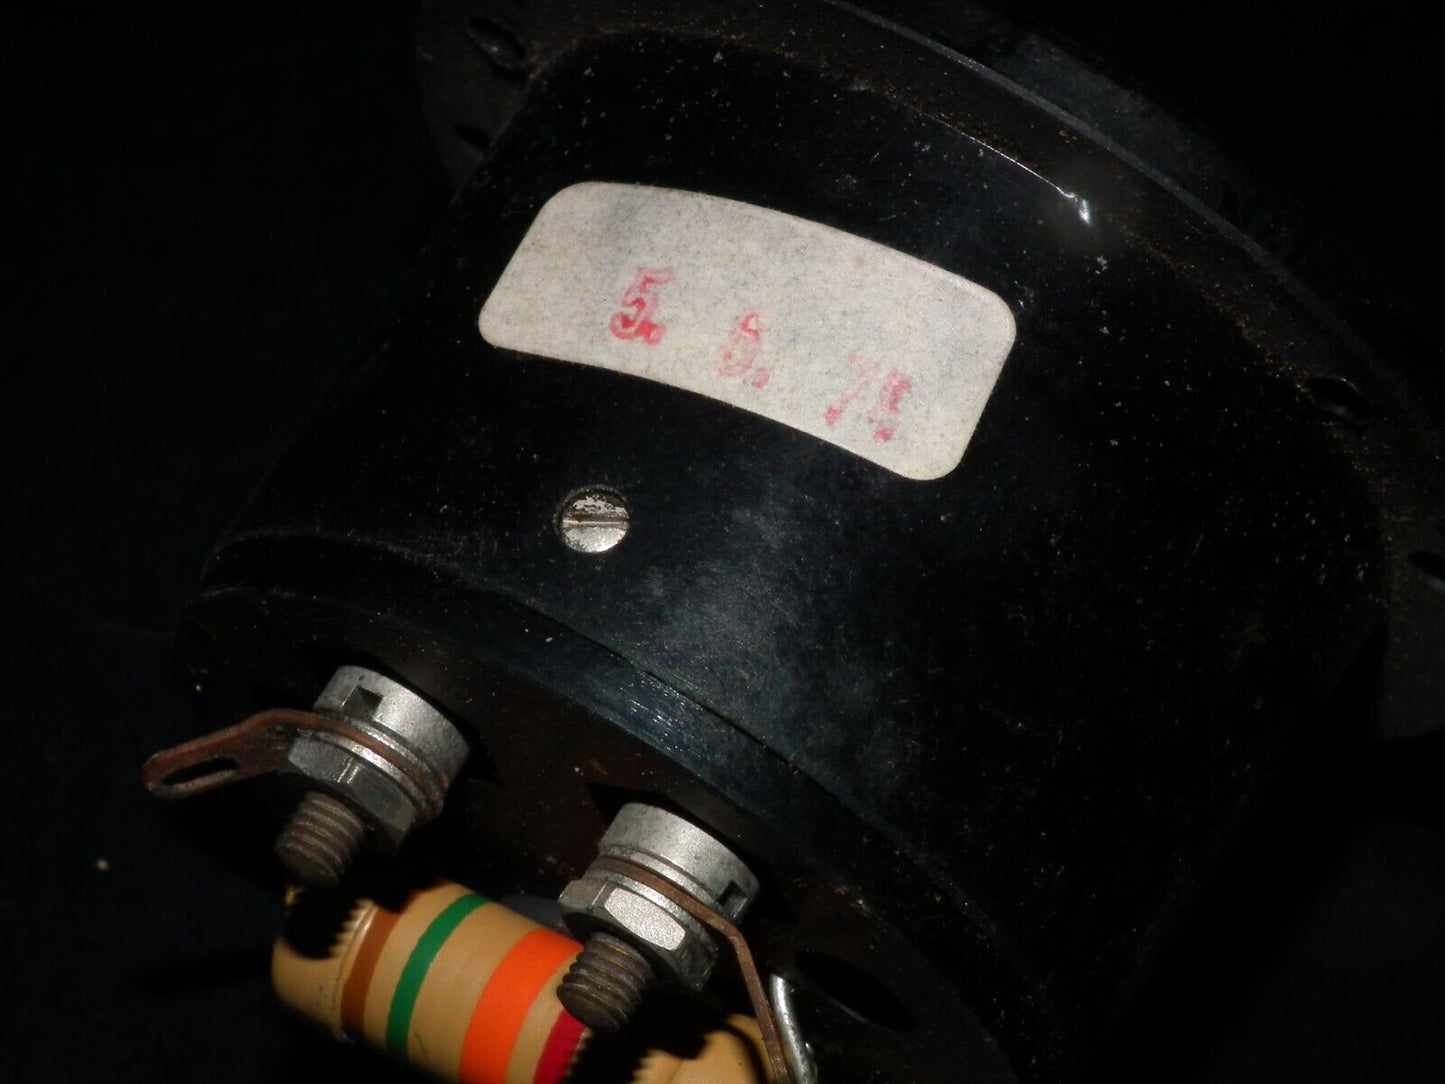 One Vintage Neuberger Instrument Voltmeter 0 - 250V NOS New Old Stock Retro Look